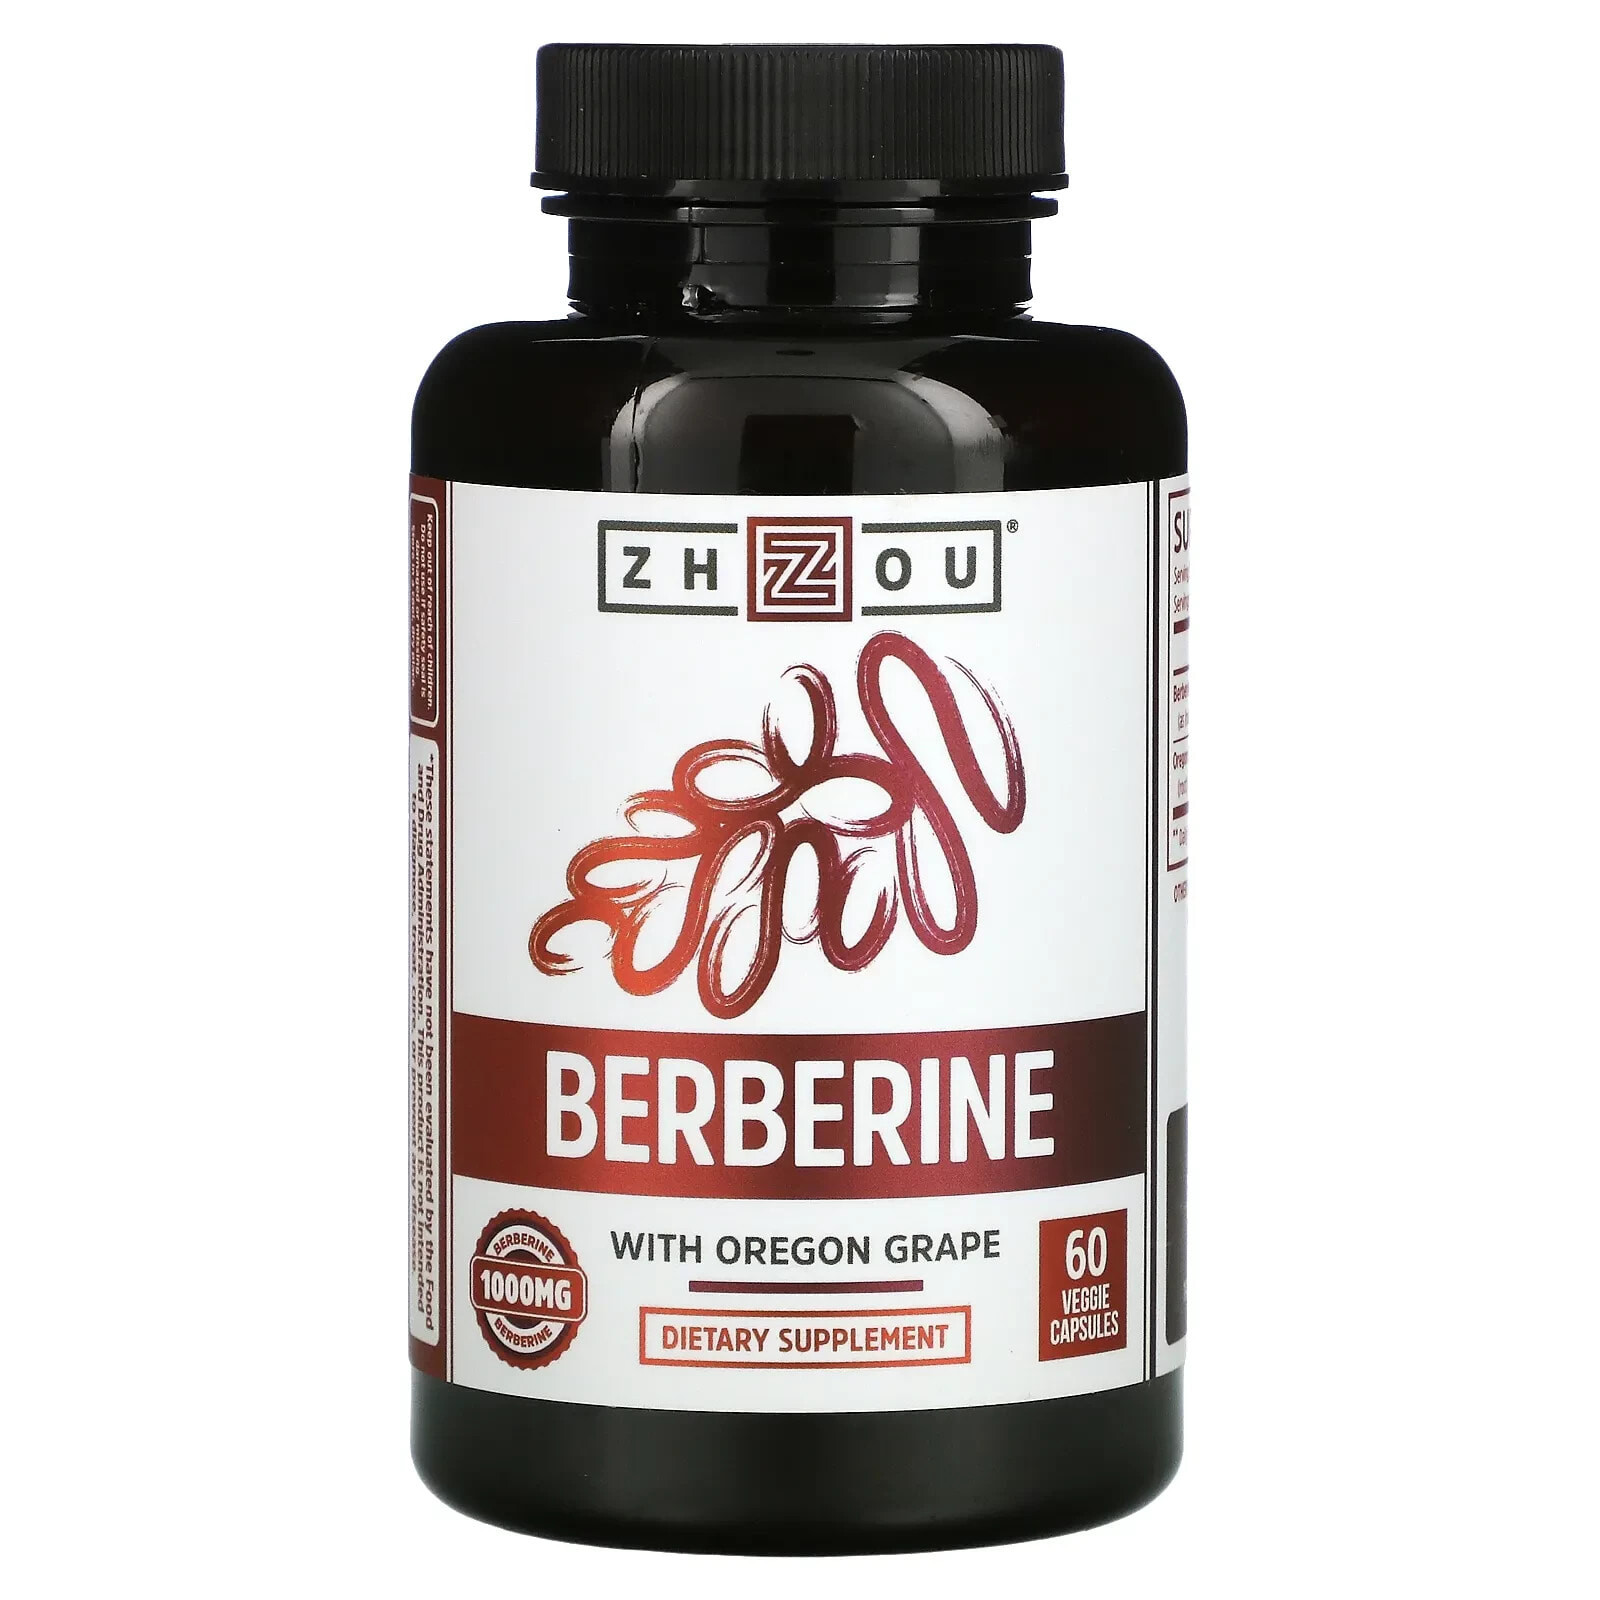 Berberine with Oregon Grape, 1,000 mg, 60 Veggie Capsules (500 mg per Capsule)